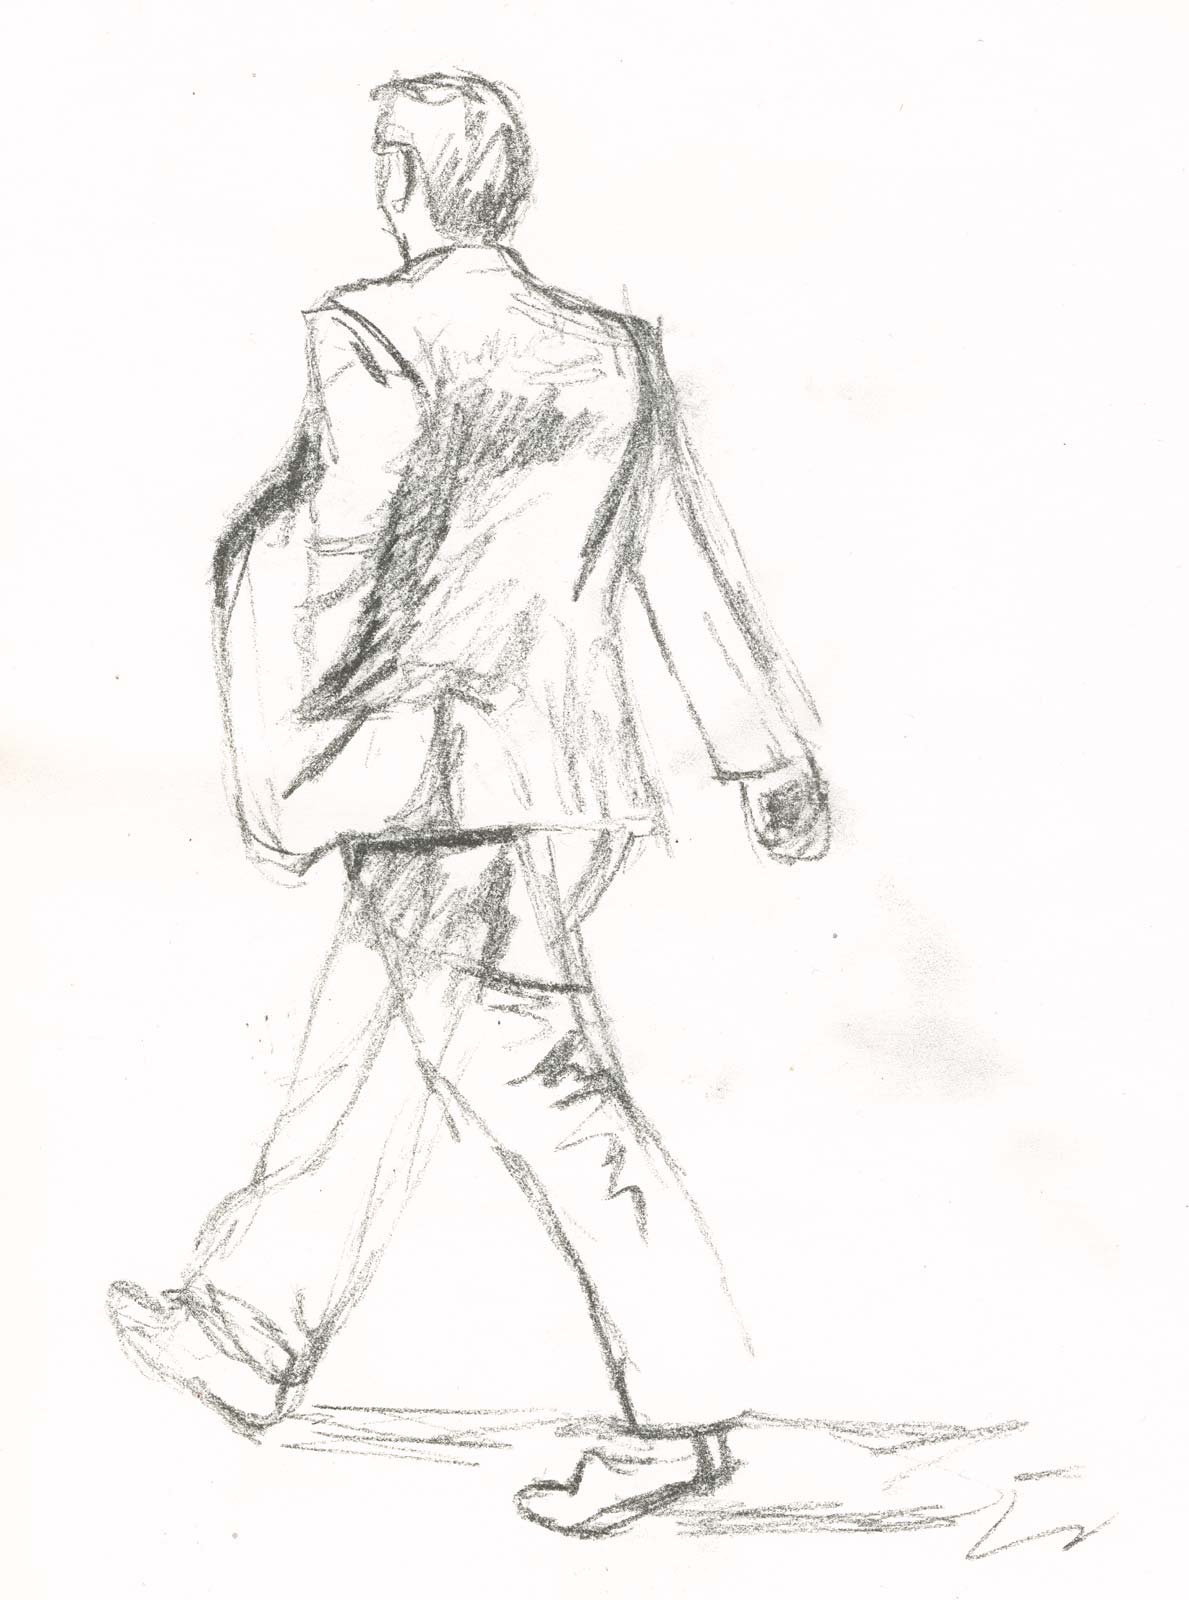 Walking Man Drawing Cliparts.co